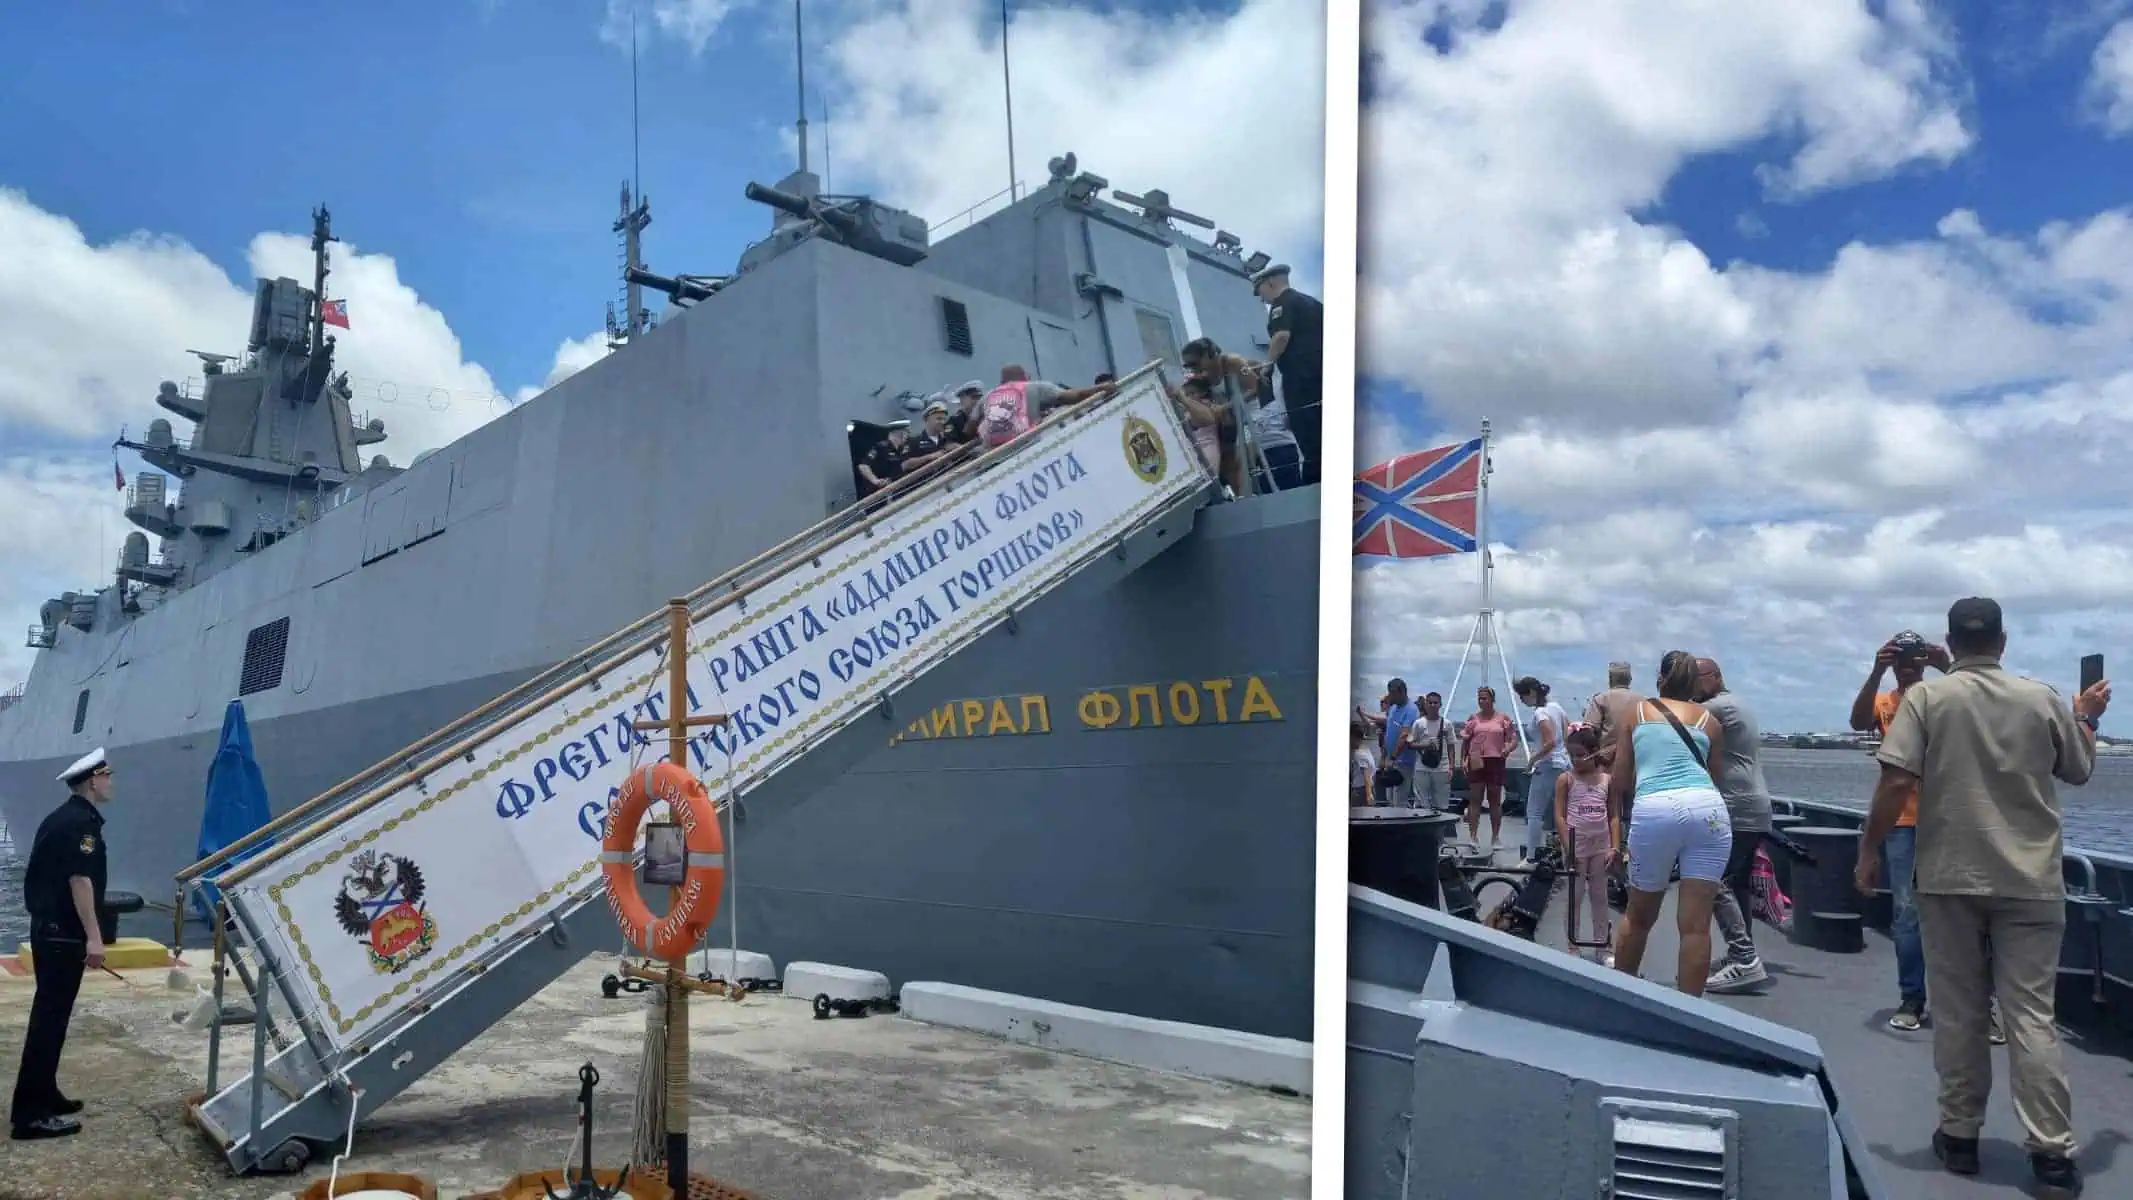 Fragata Rusa Almirante Gorshkov Abre Sus Puertas en La Habana: Descubre los Horarios